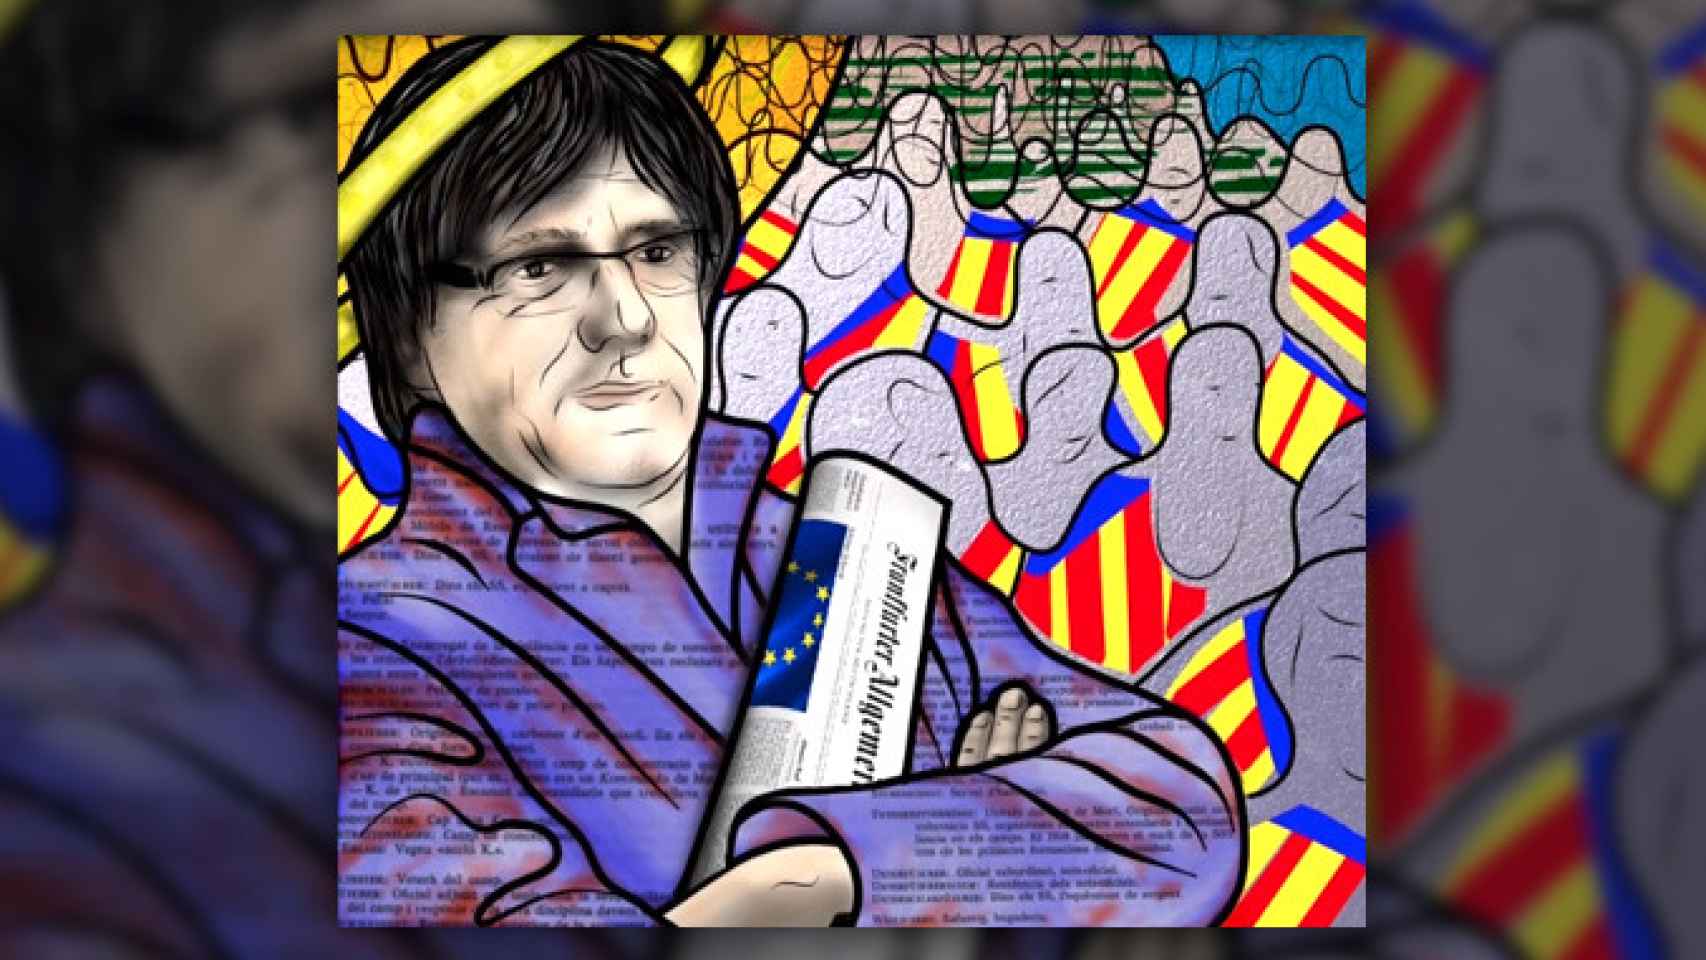 El vitral de Carles Puigdemont sobre el 'procés'